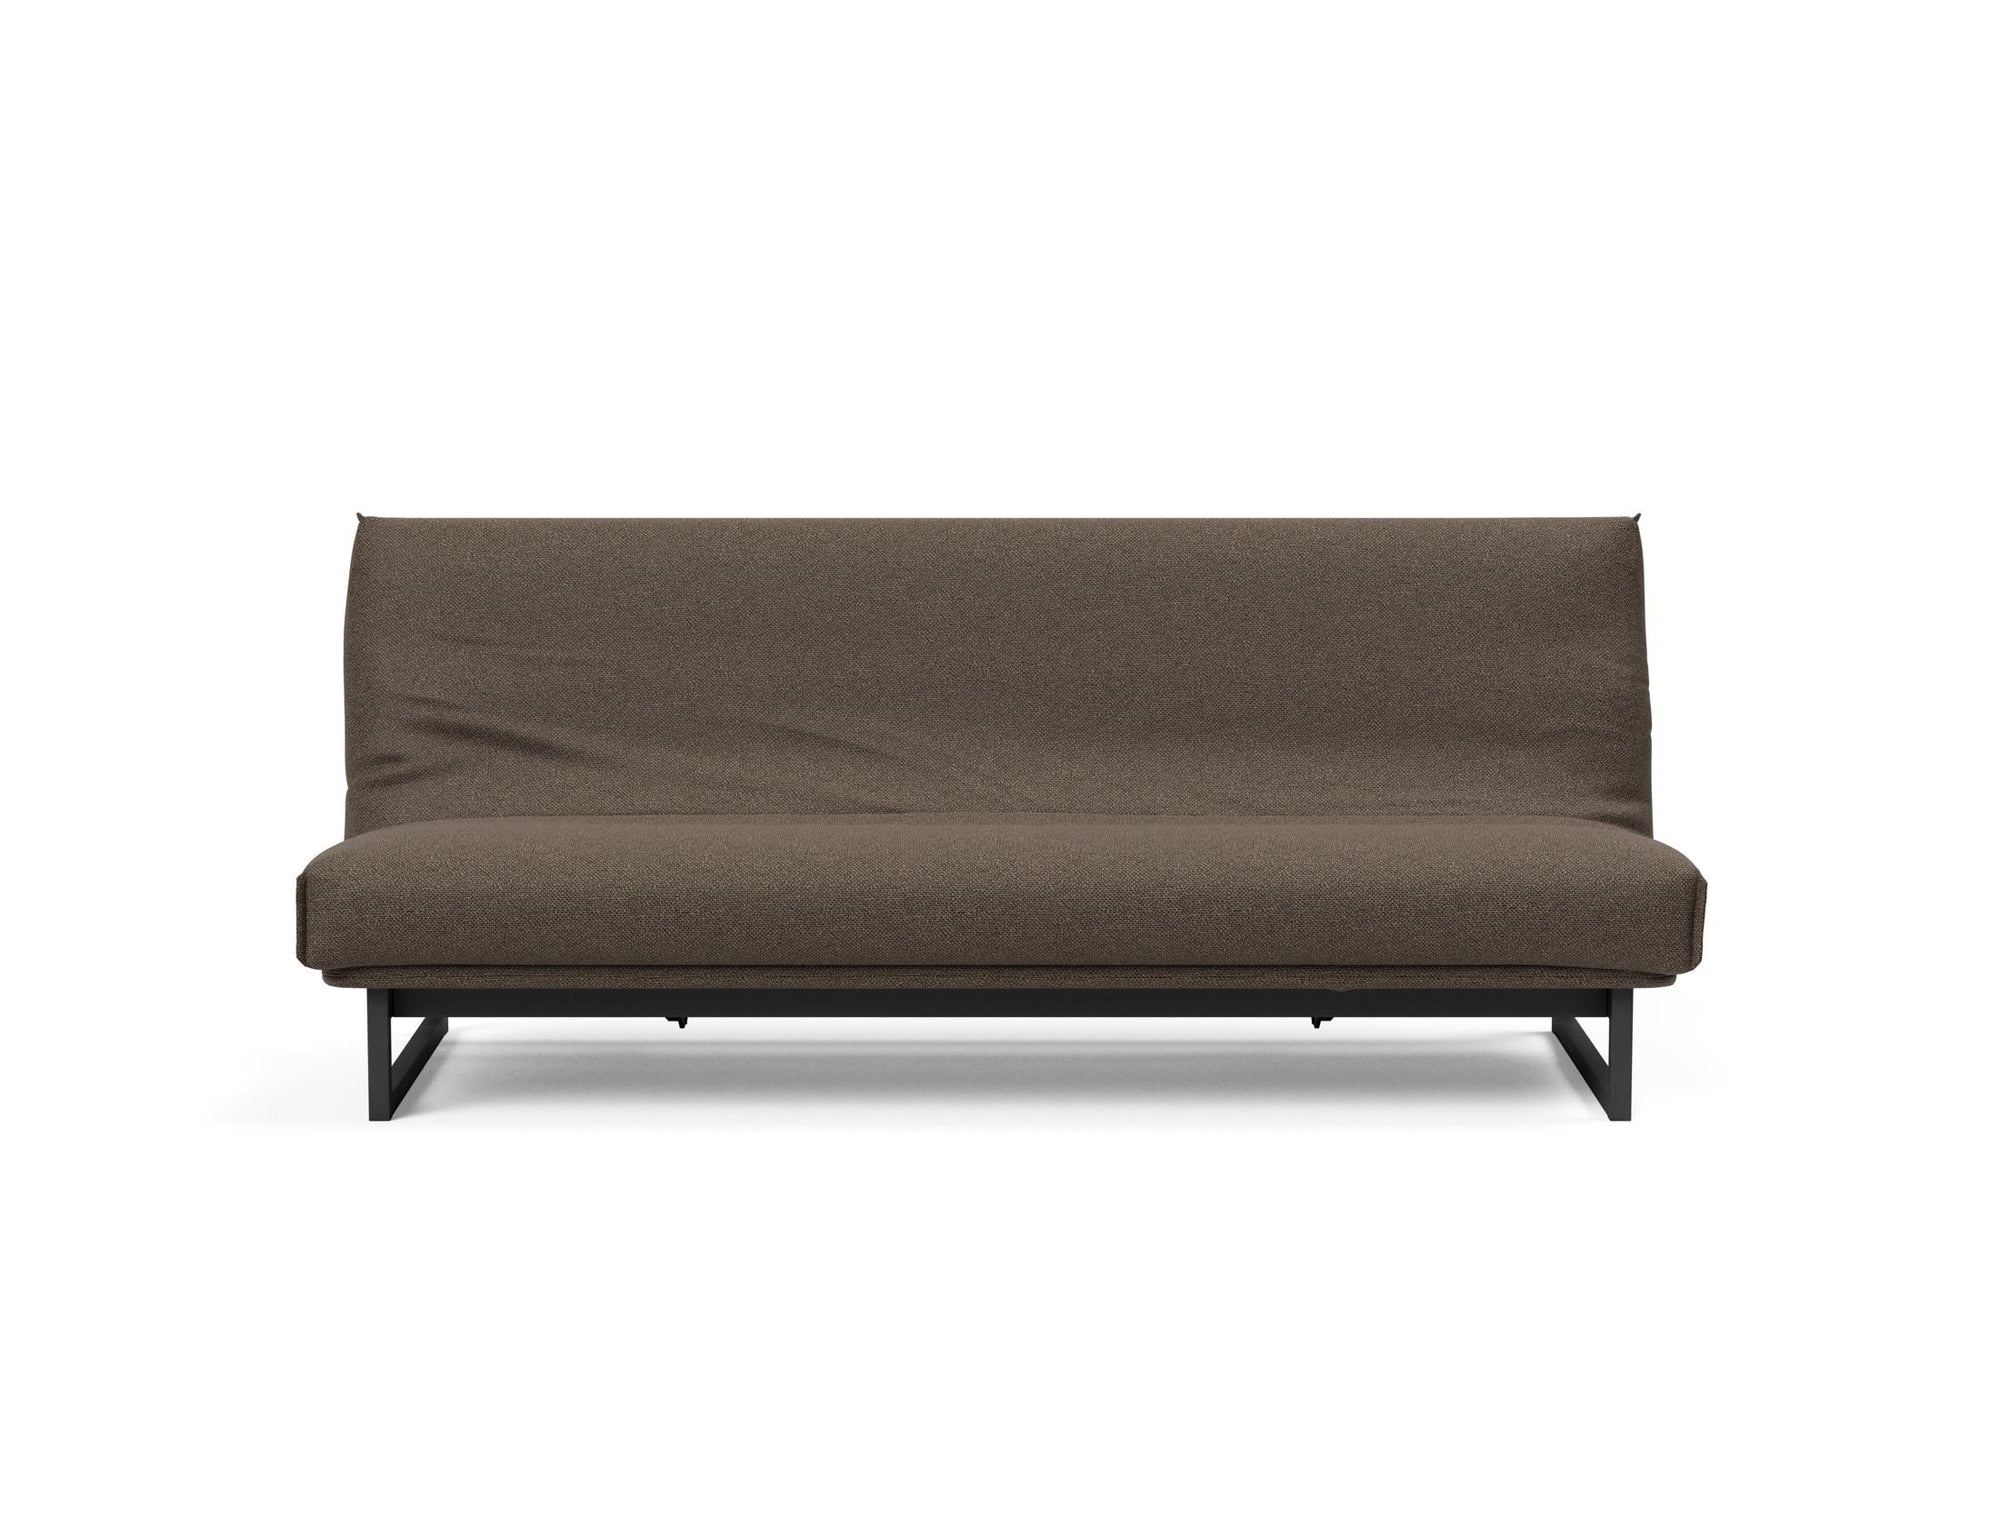 TEEN FRACTION Super Soft Sofa Bed 120 CM